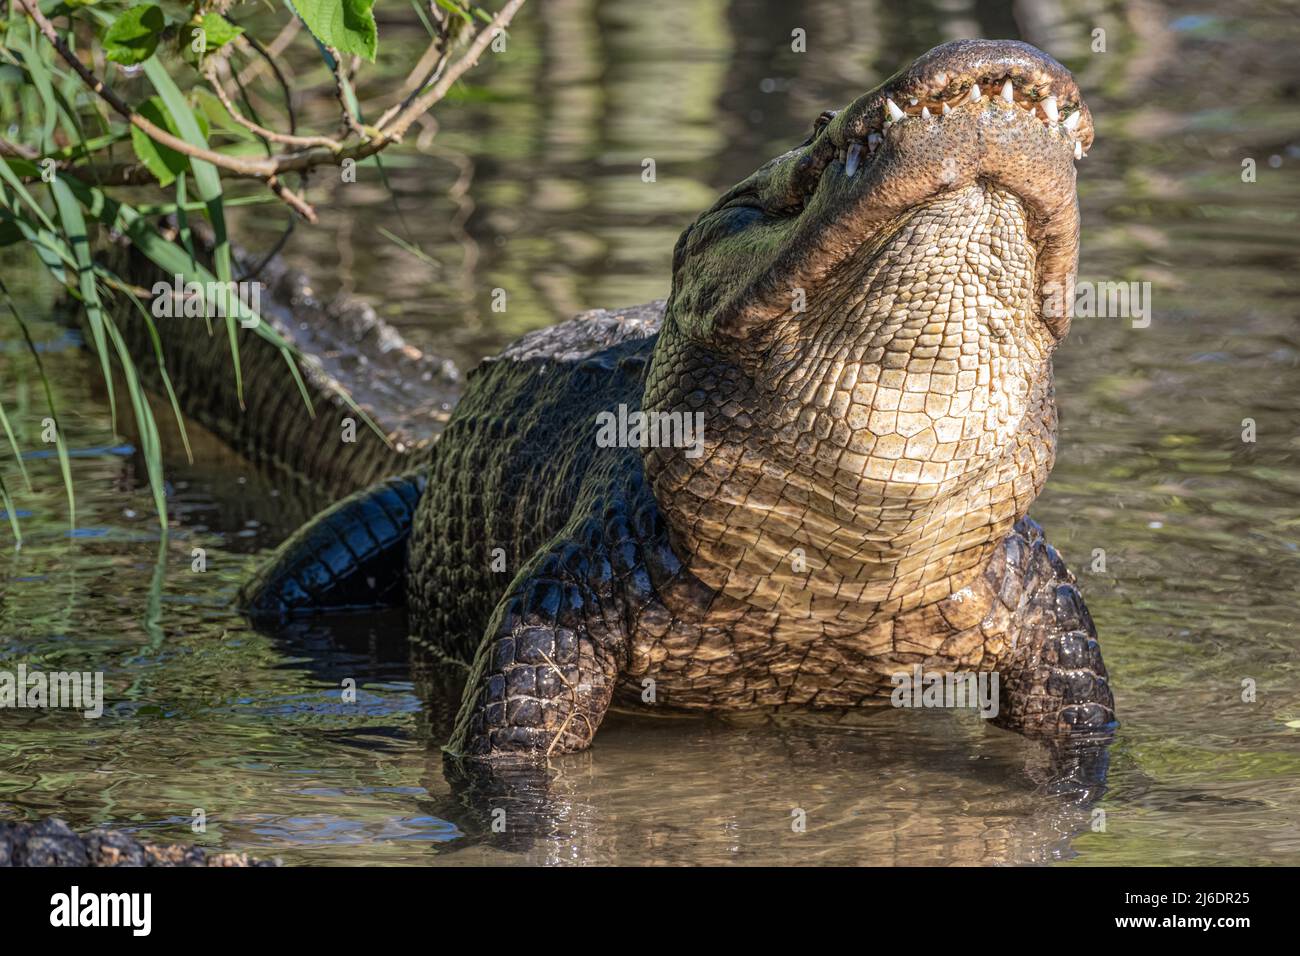 Alligator américain (Alligator mississippiensis) levant la tête tout en grotestant au parc zoologique de la ferme des alligators de St. Augustine, en Floride. Banque D'Images